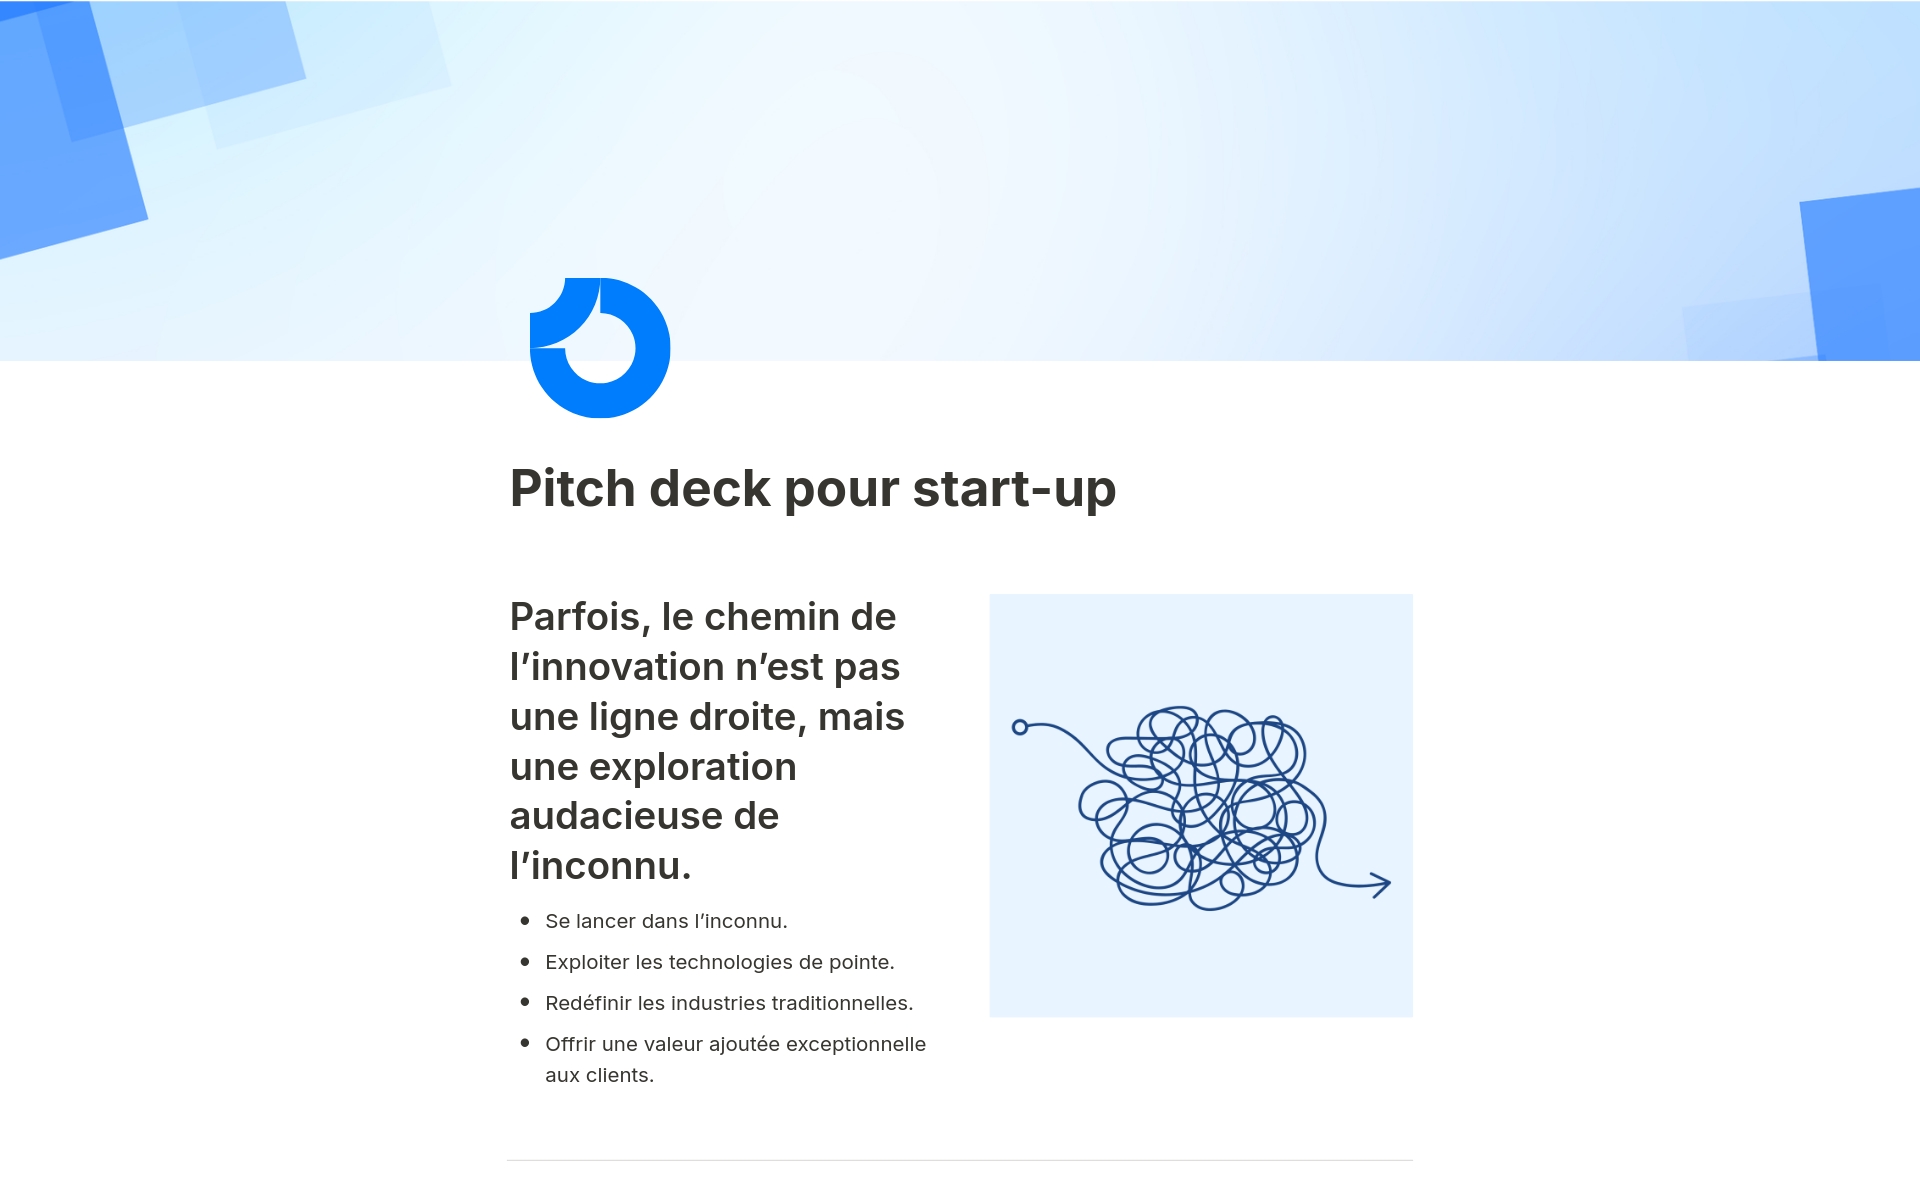 Le modèle Notion « Pitch Deck pour start-up » offre un format élégant et efficace pour présenter vos idées et stratégies commerciales innovantes.